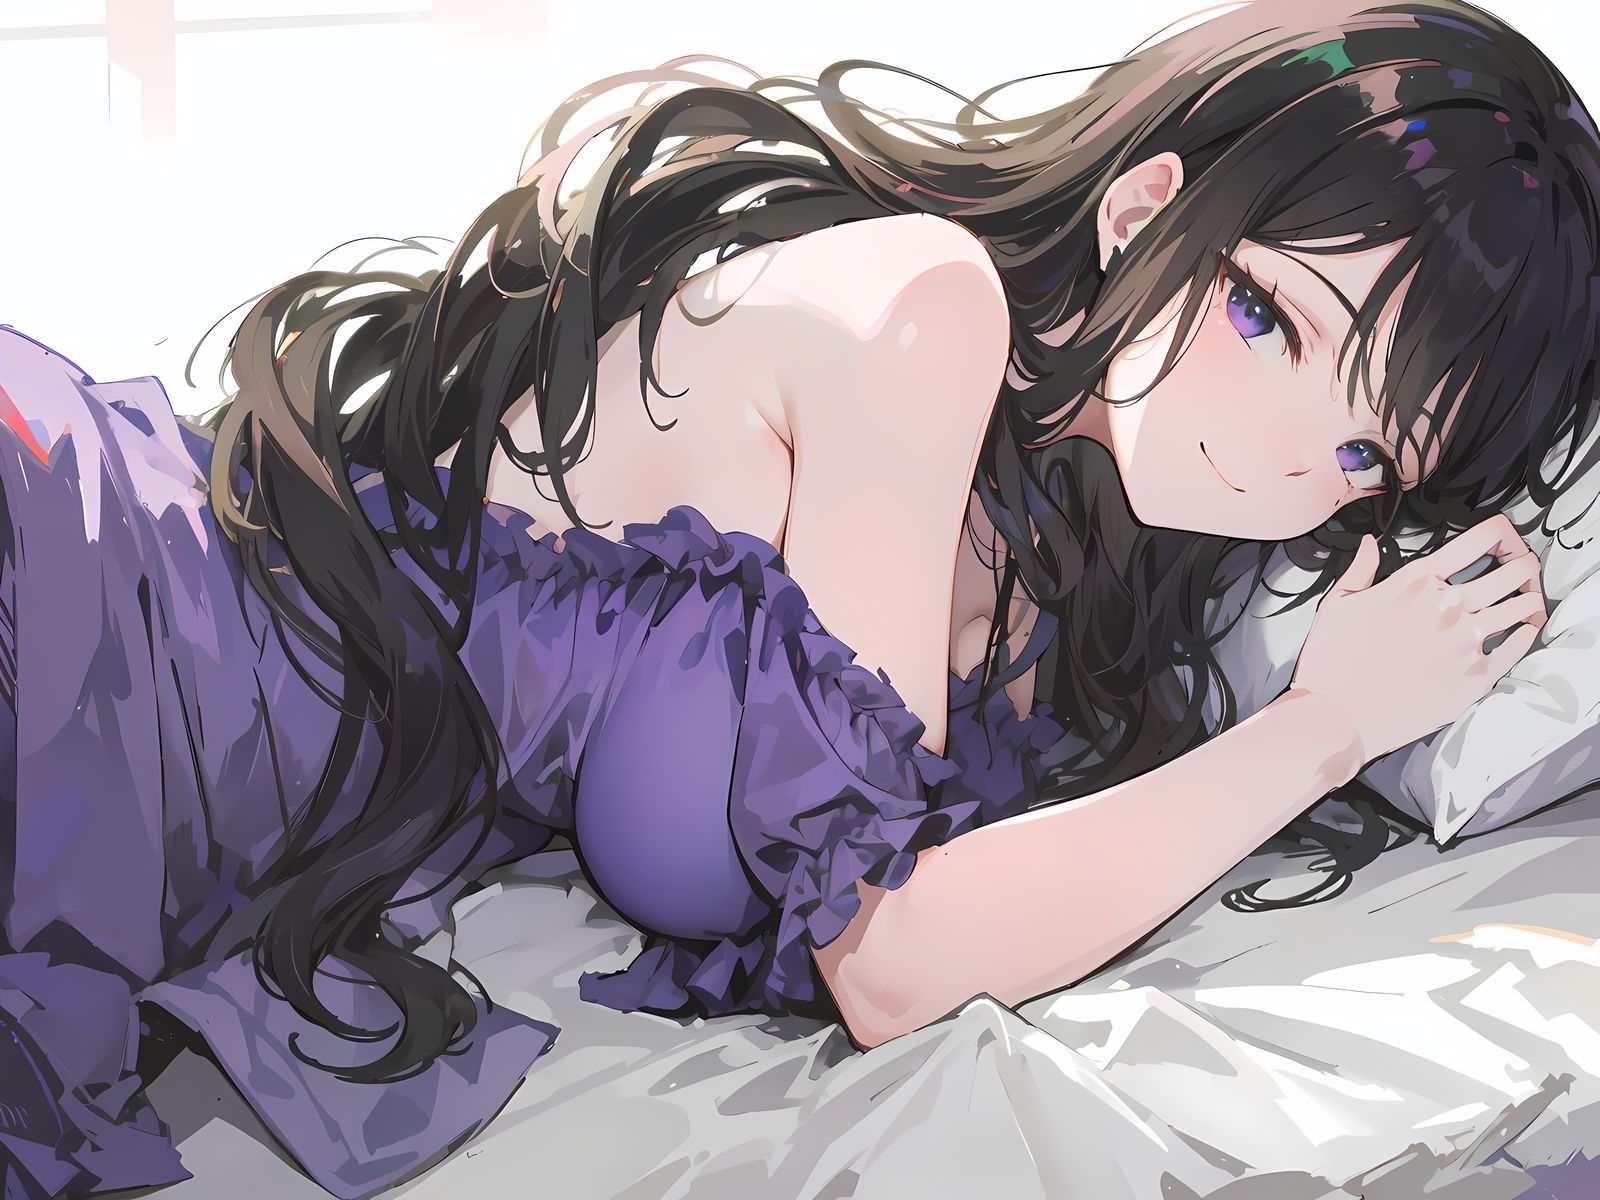 躺在你身边的紫色睡裙大姐姐插画图片壁纸